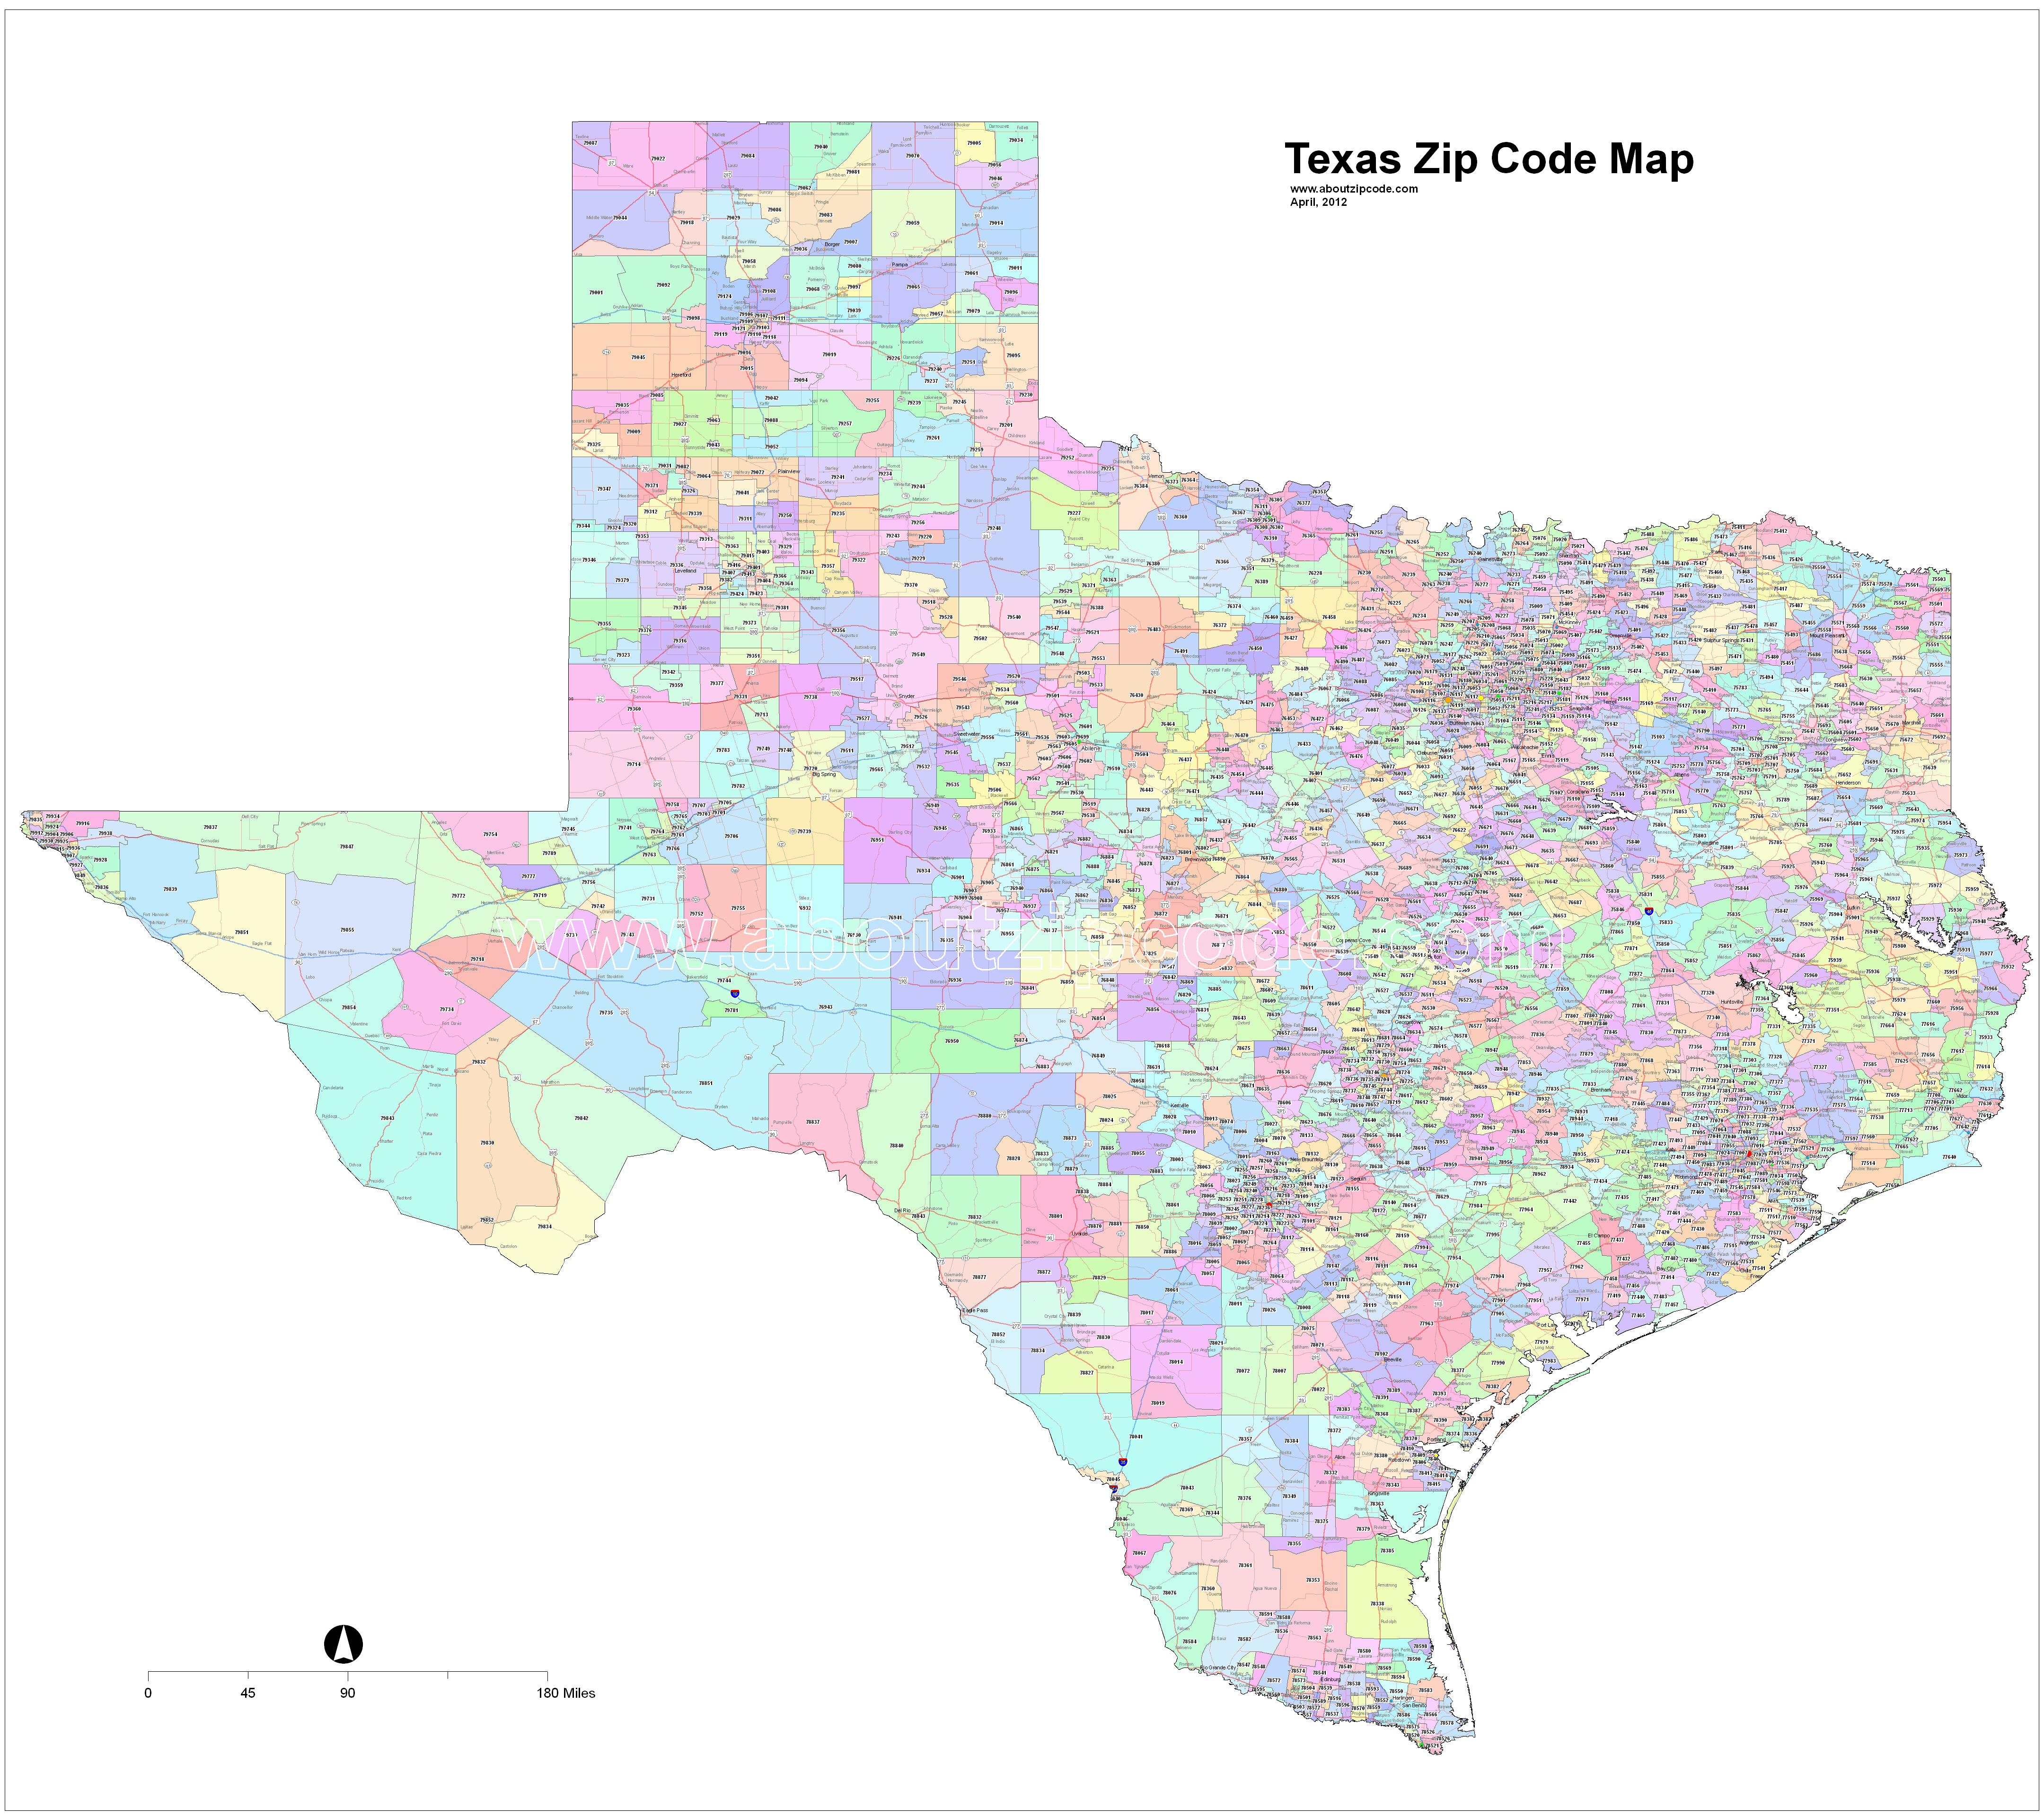 weatherford tx zip code map Texas Zip Code Maps Free Texas Zip Code Maps weatherford tx zip code map